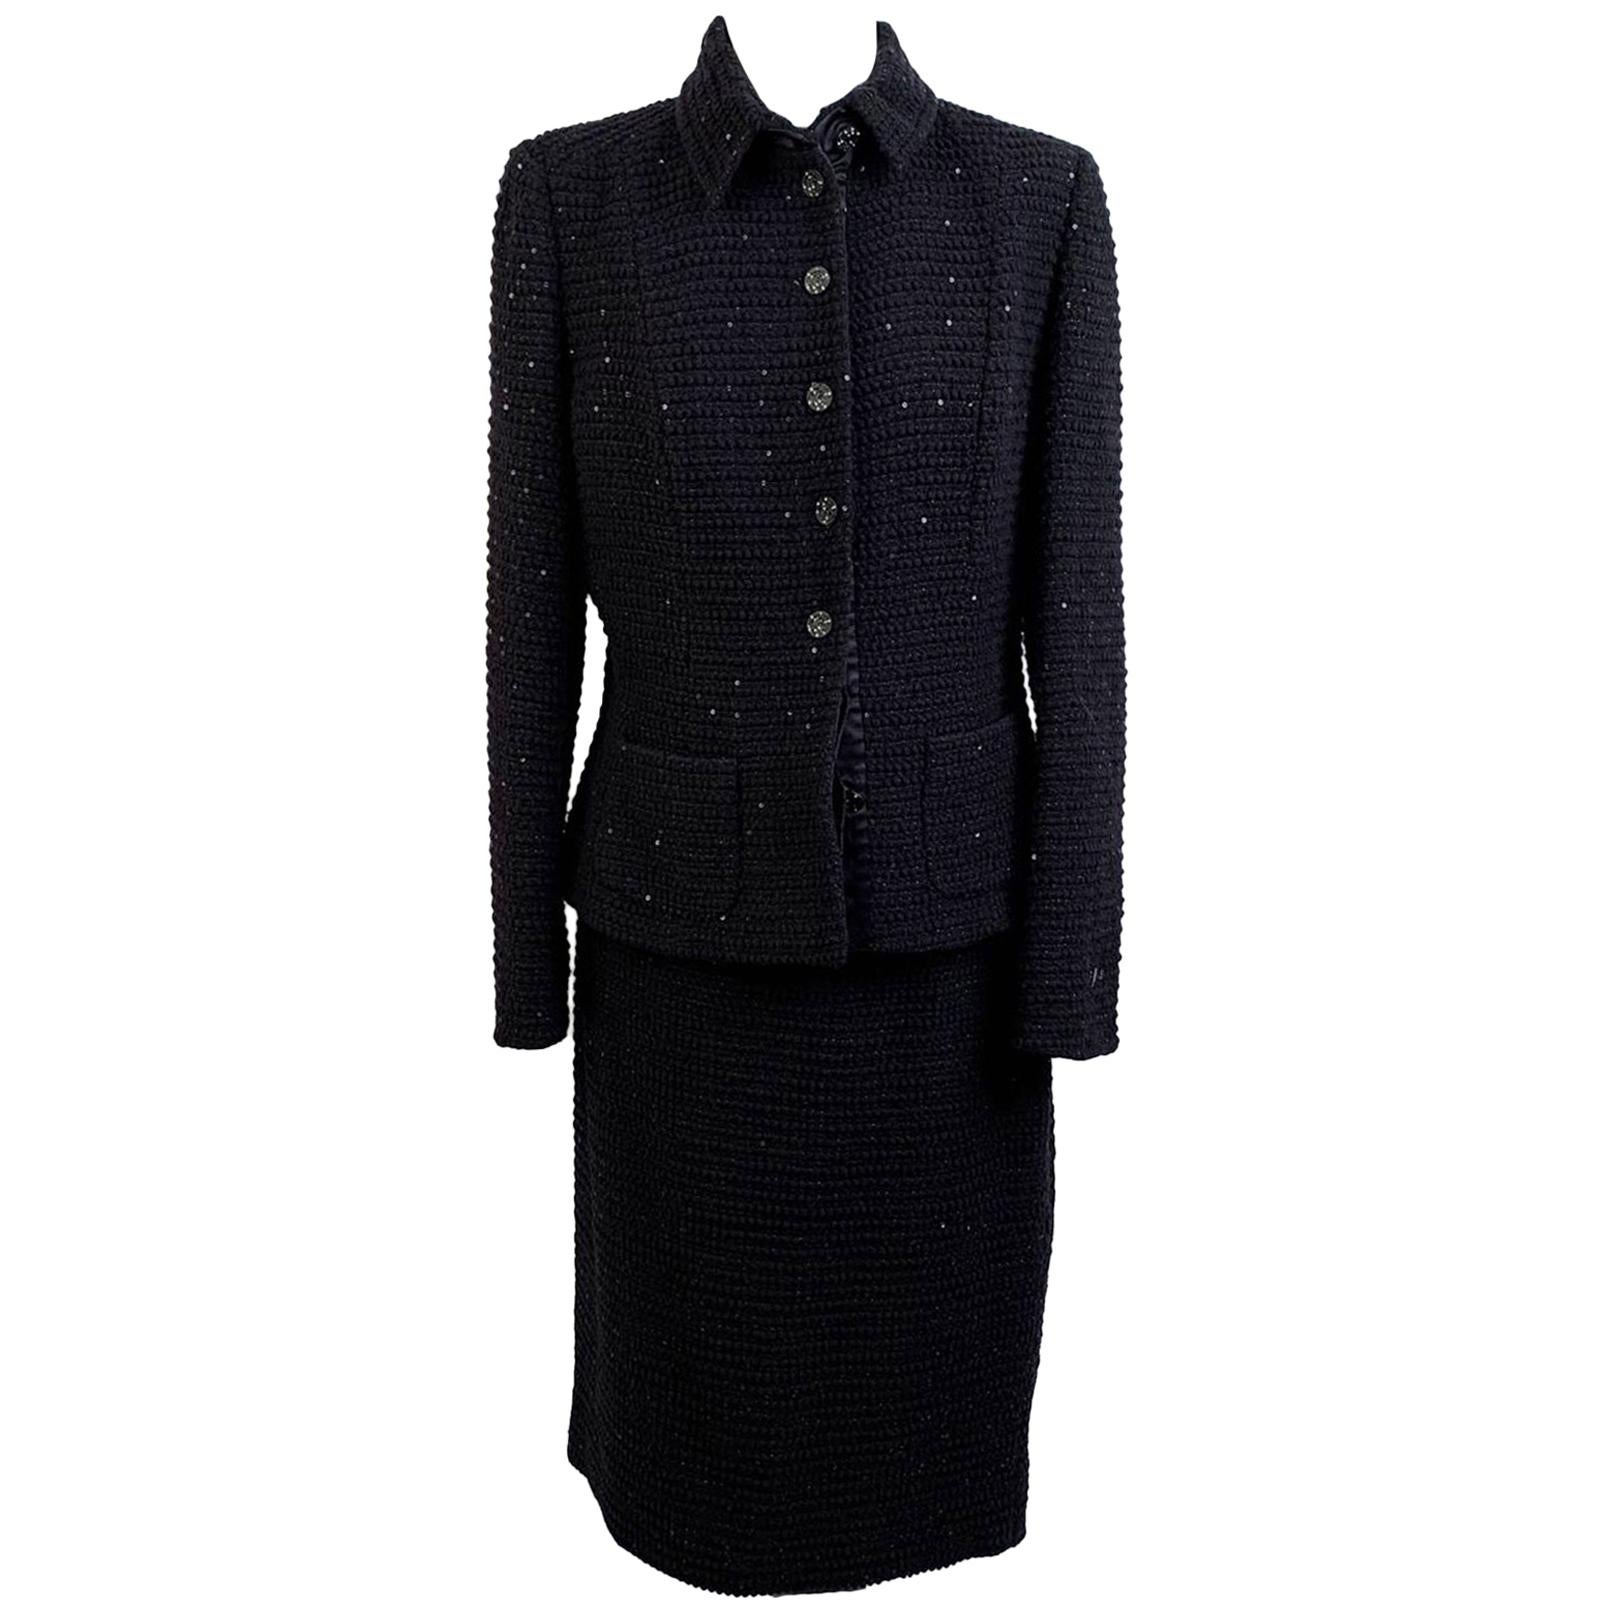 Les Copains Vintage Black Sequin Wool Skirt Suit Size 44